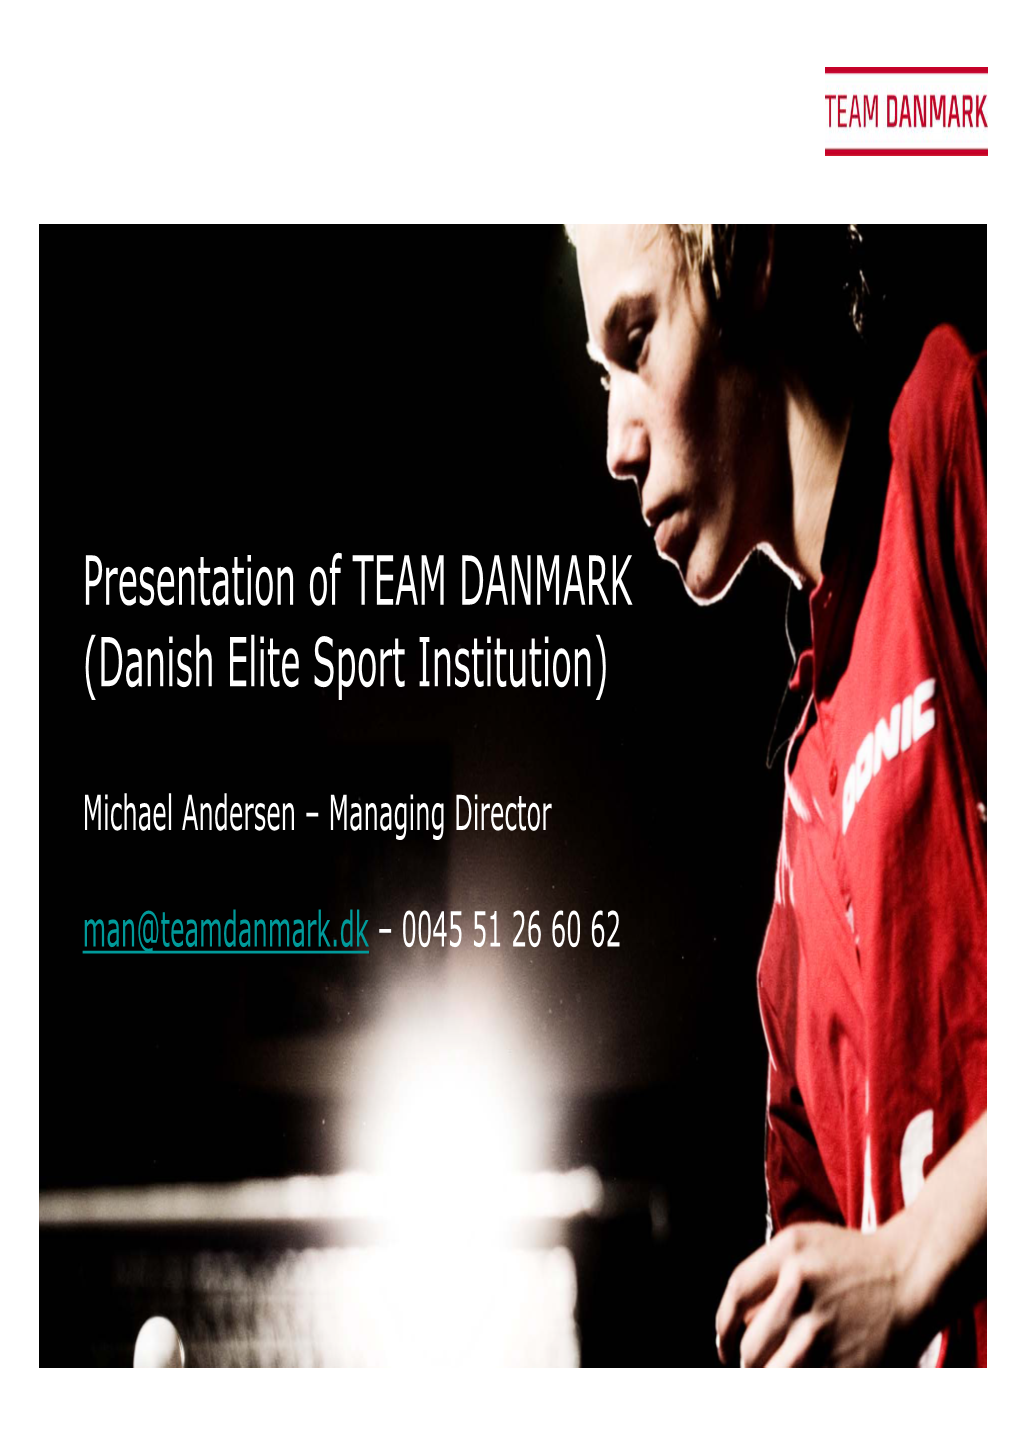 Danish Elite Sports Institution)